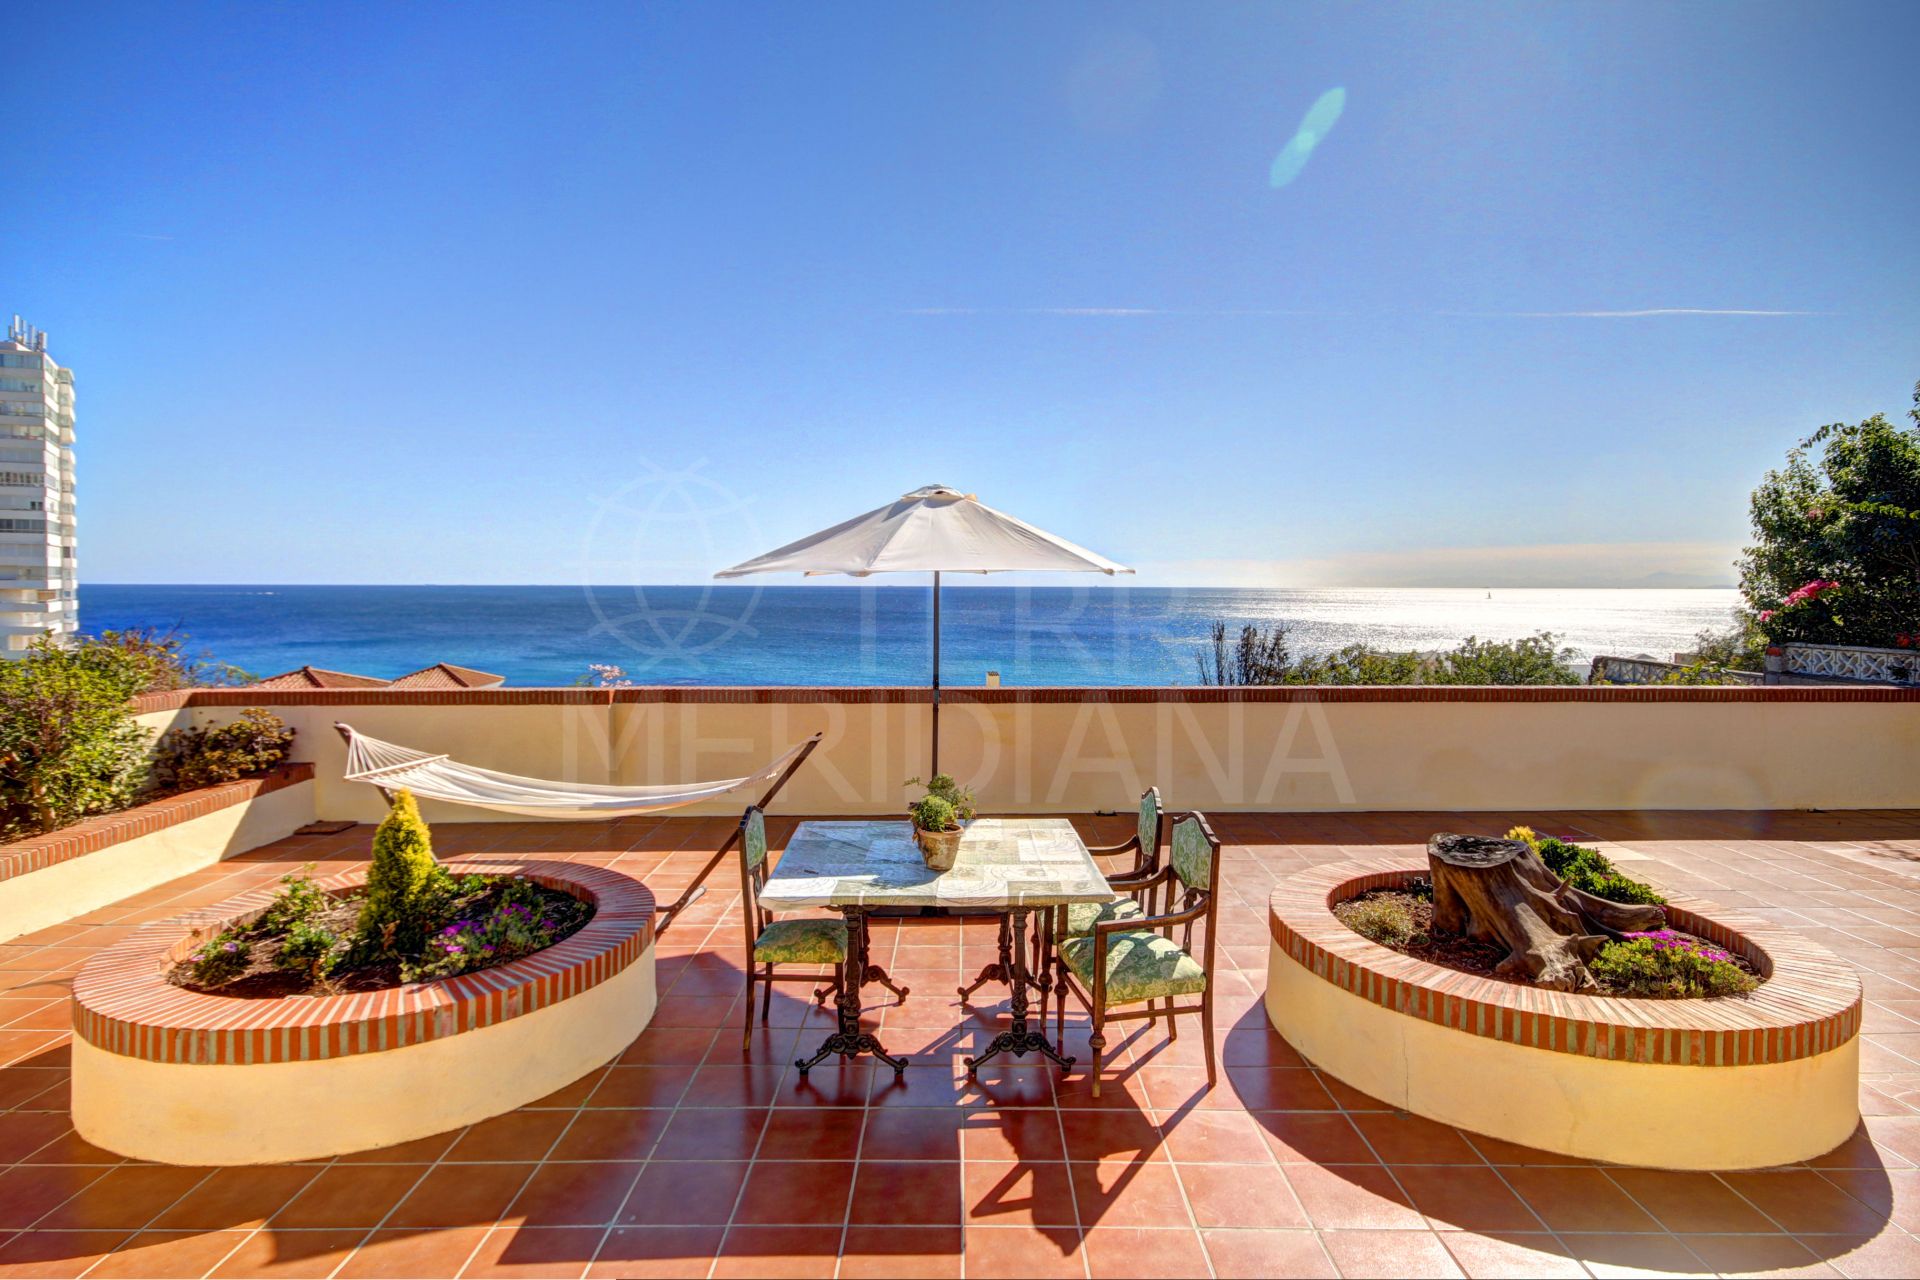 Villa de estilo español con vistas panorámicas al mar en venta en Torreguadiaro